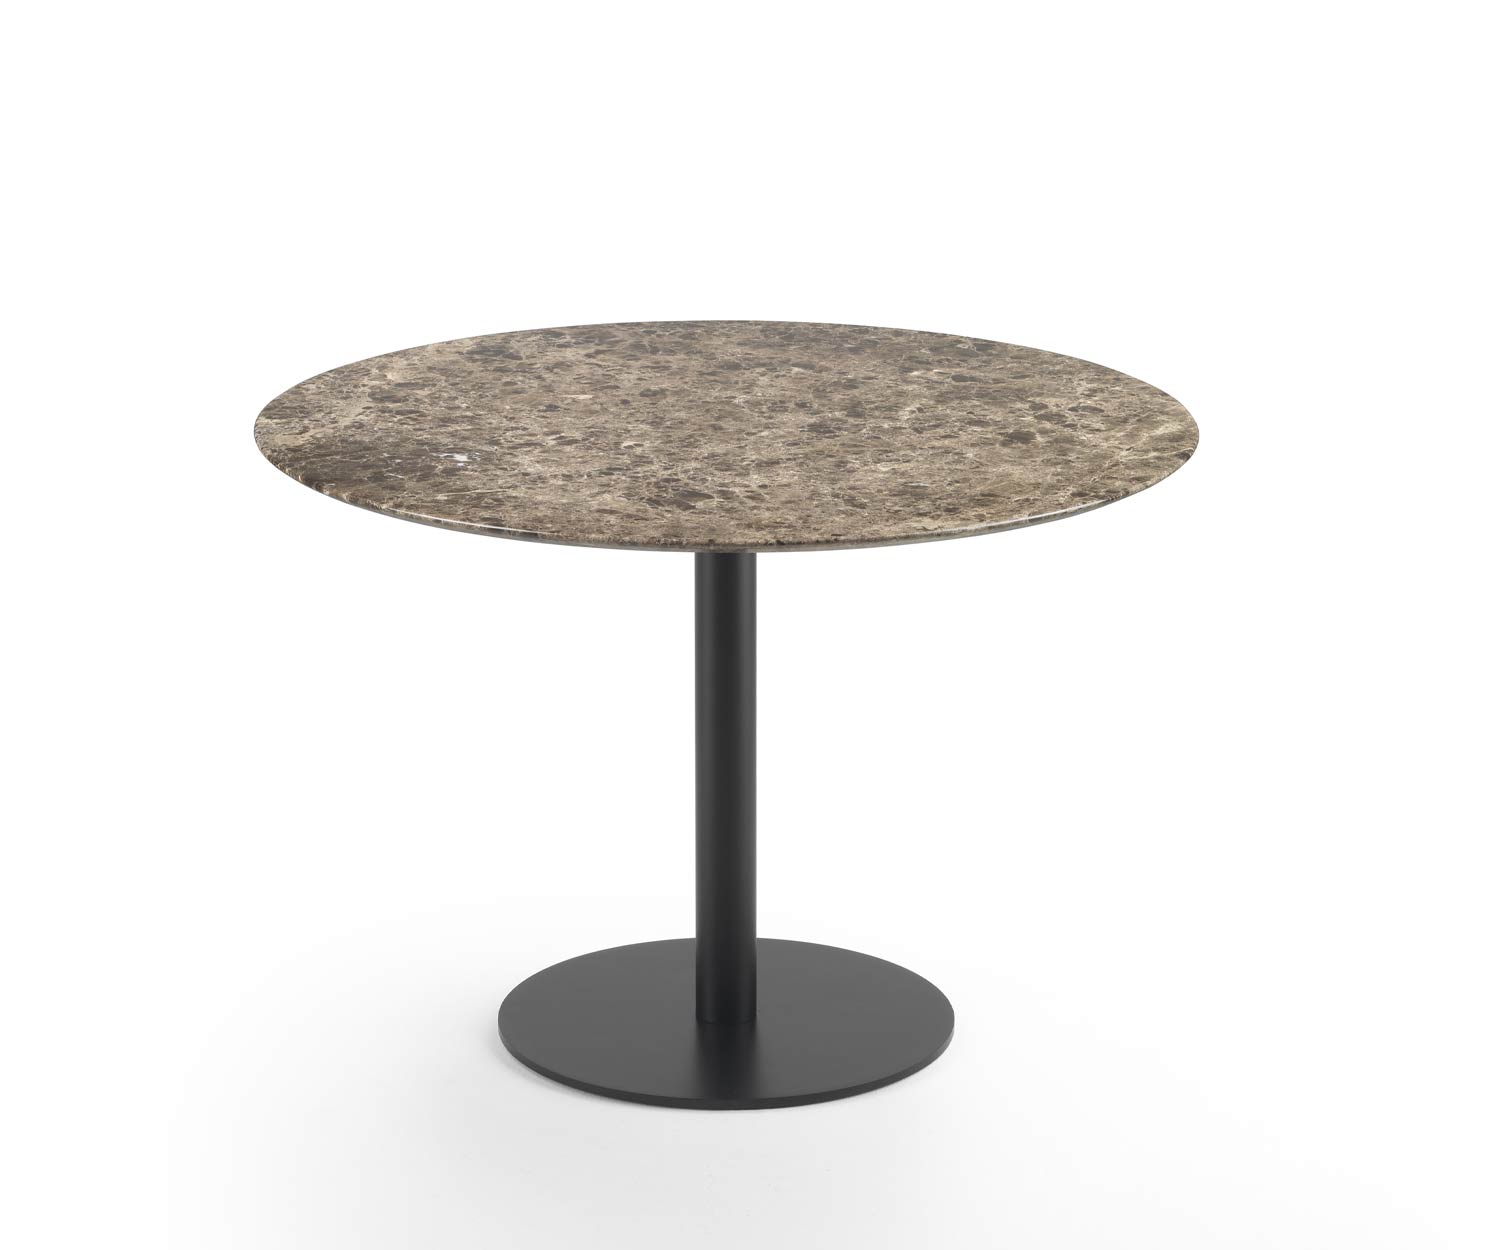 Brauner Marmor Tisch Break von Marelli mit rundem Standfuß und runder Tischplatte